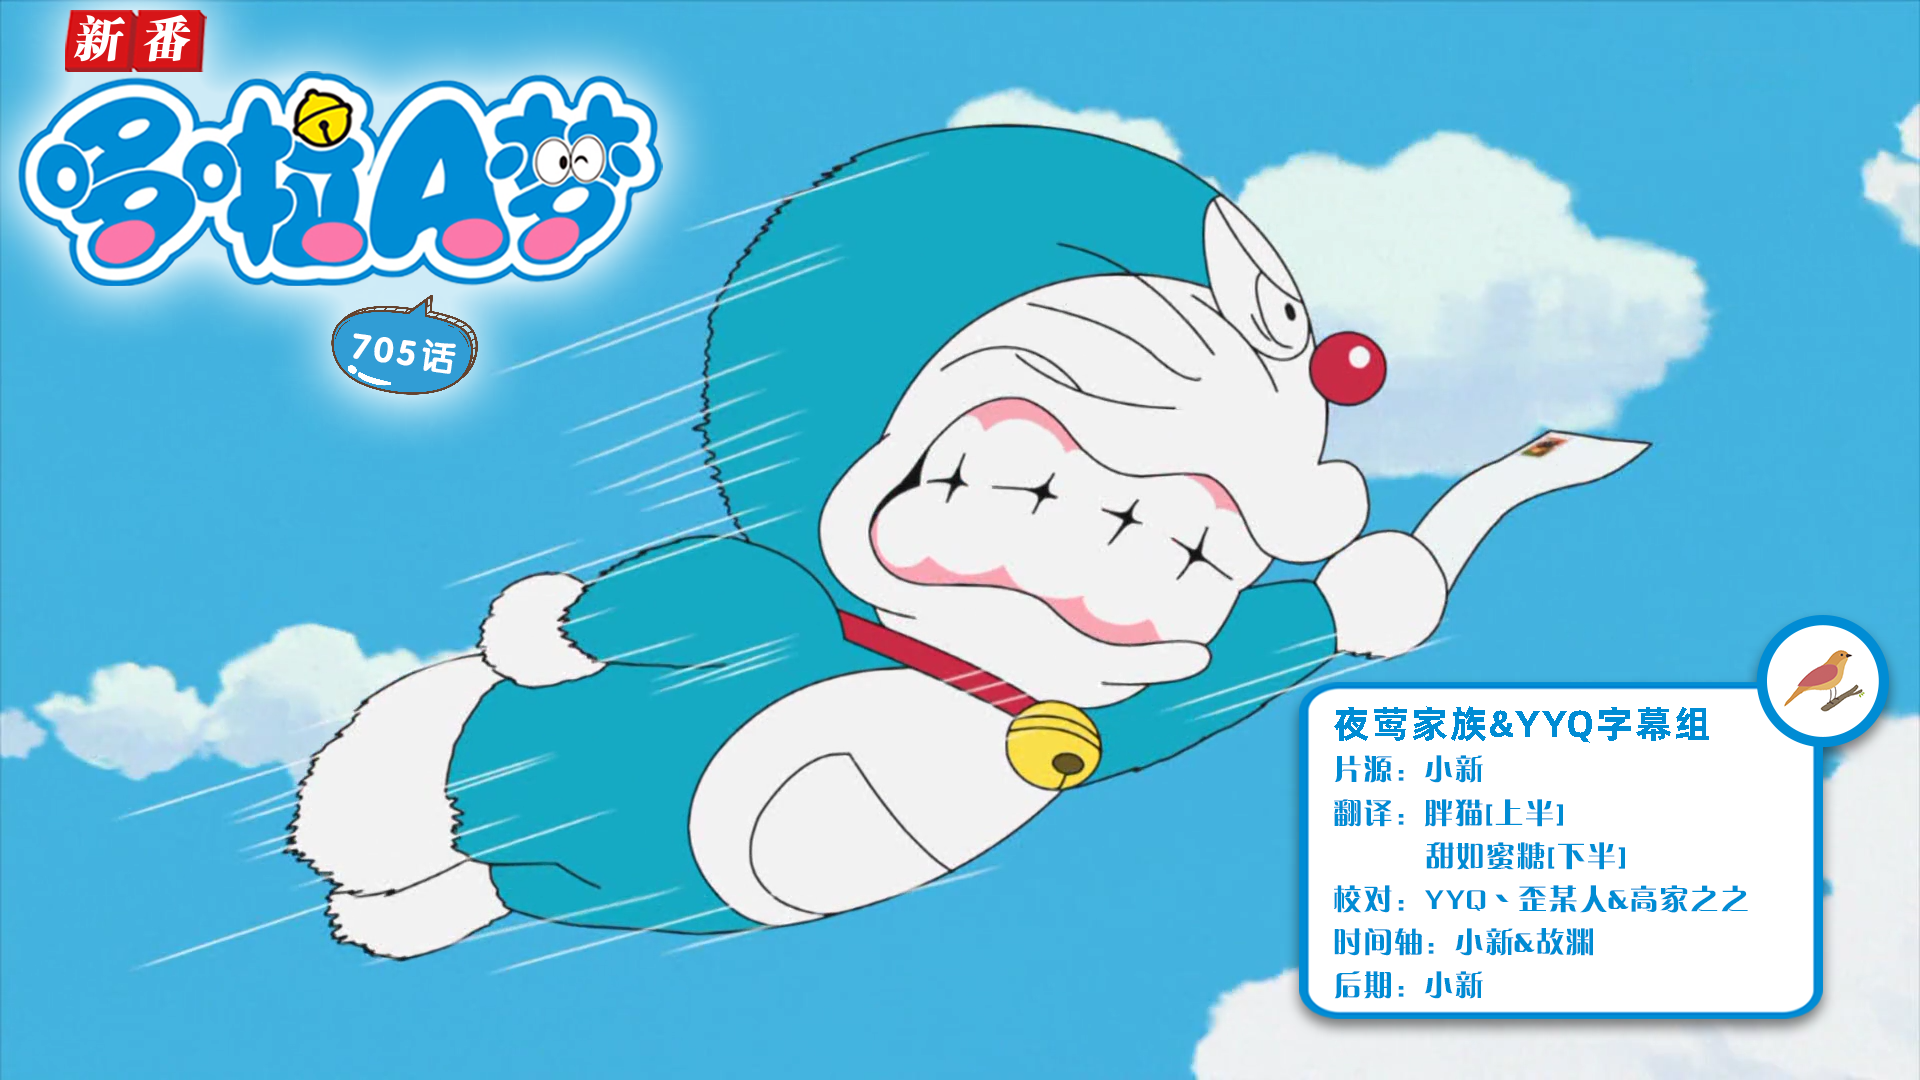 [夜莺家族&YYQ字幕组]New Doraemon 哆啦A梦新番[705][2022.05.07][AVC][1080P][GB_JP]插图icecomic动漫-云之彼端,约定的地方(´･ᴗ･`)2